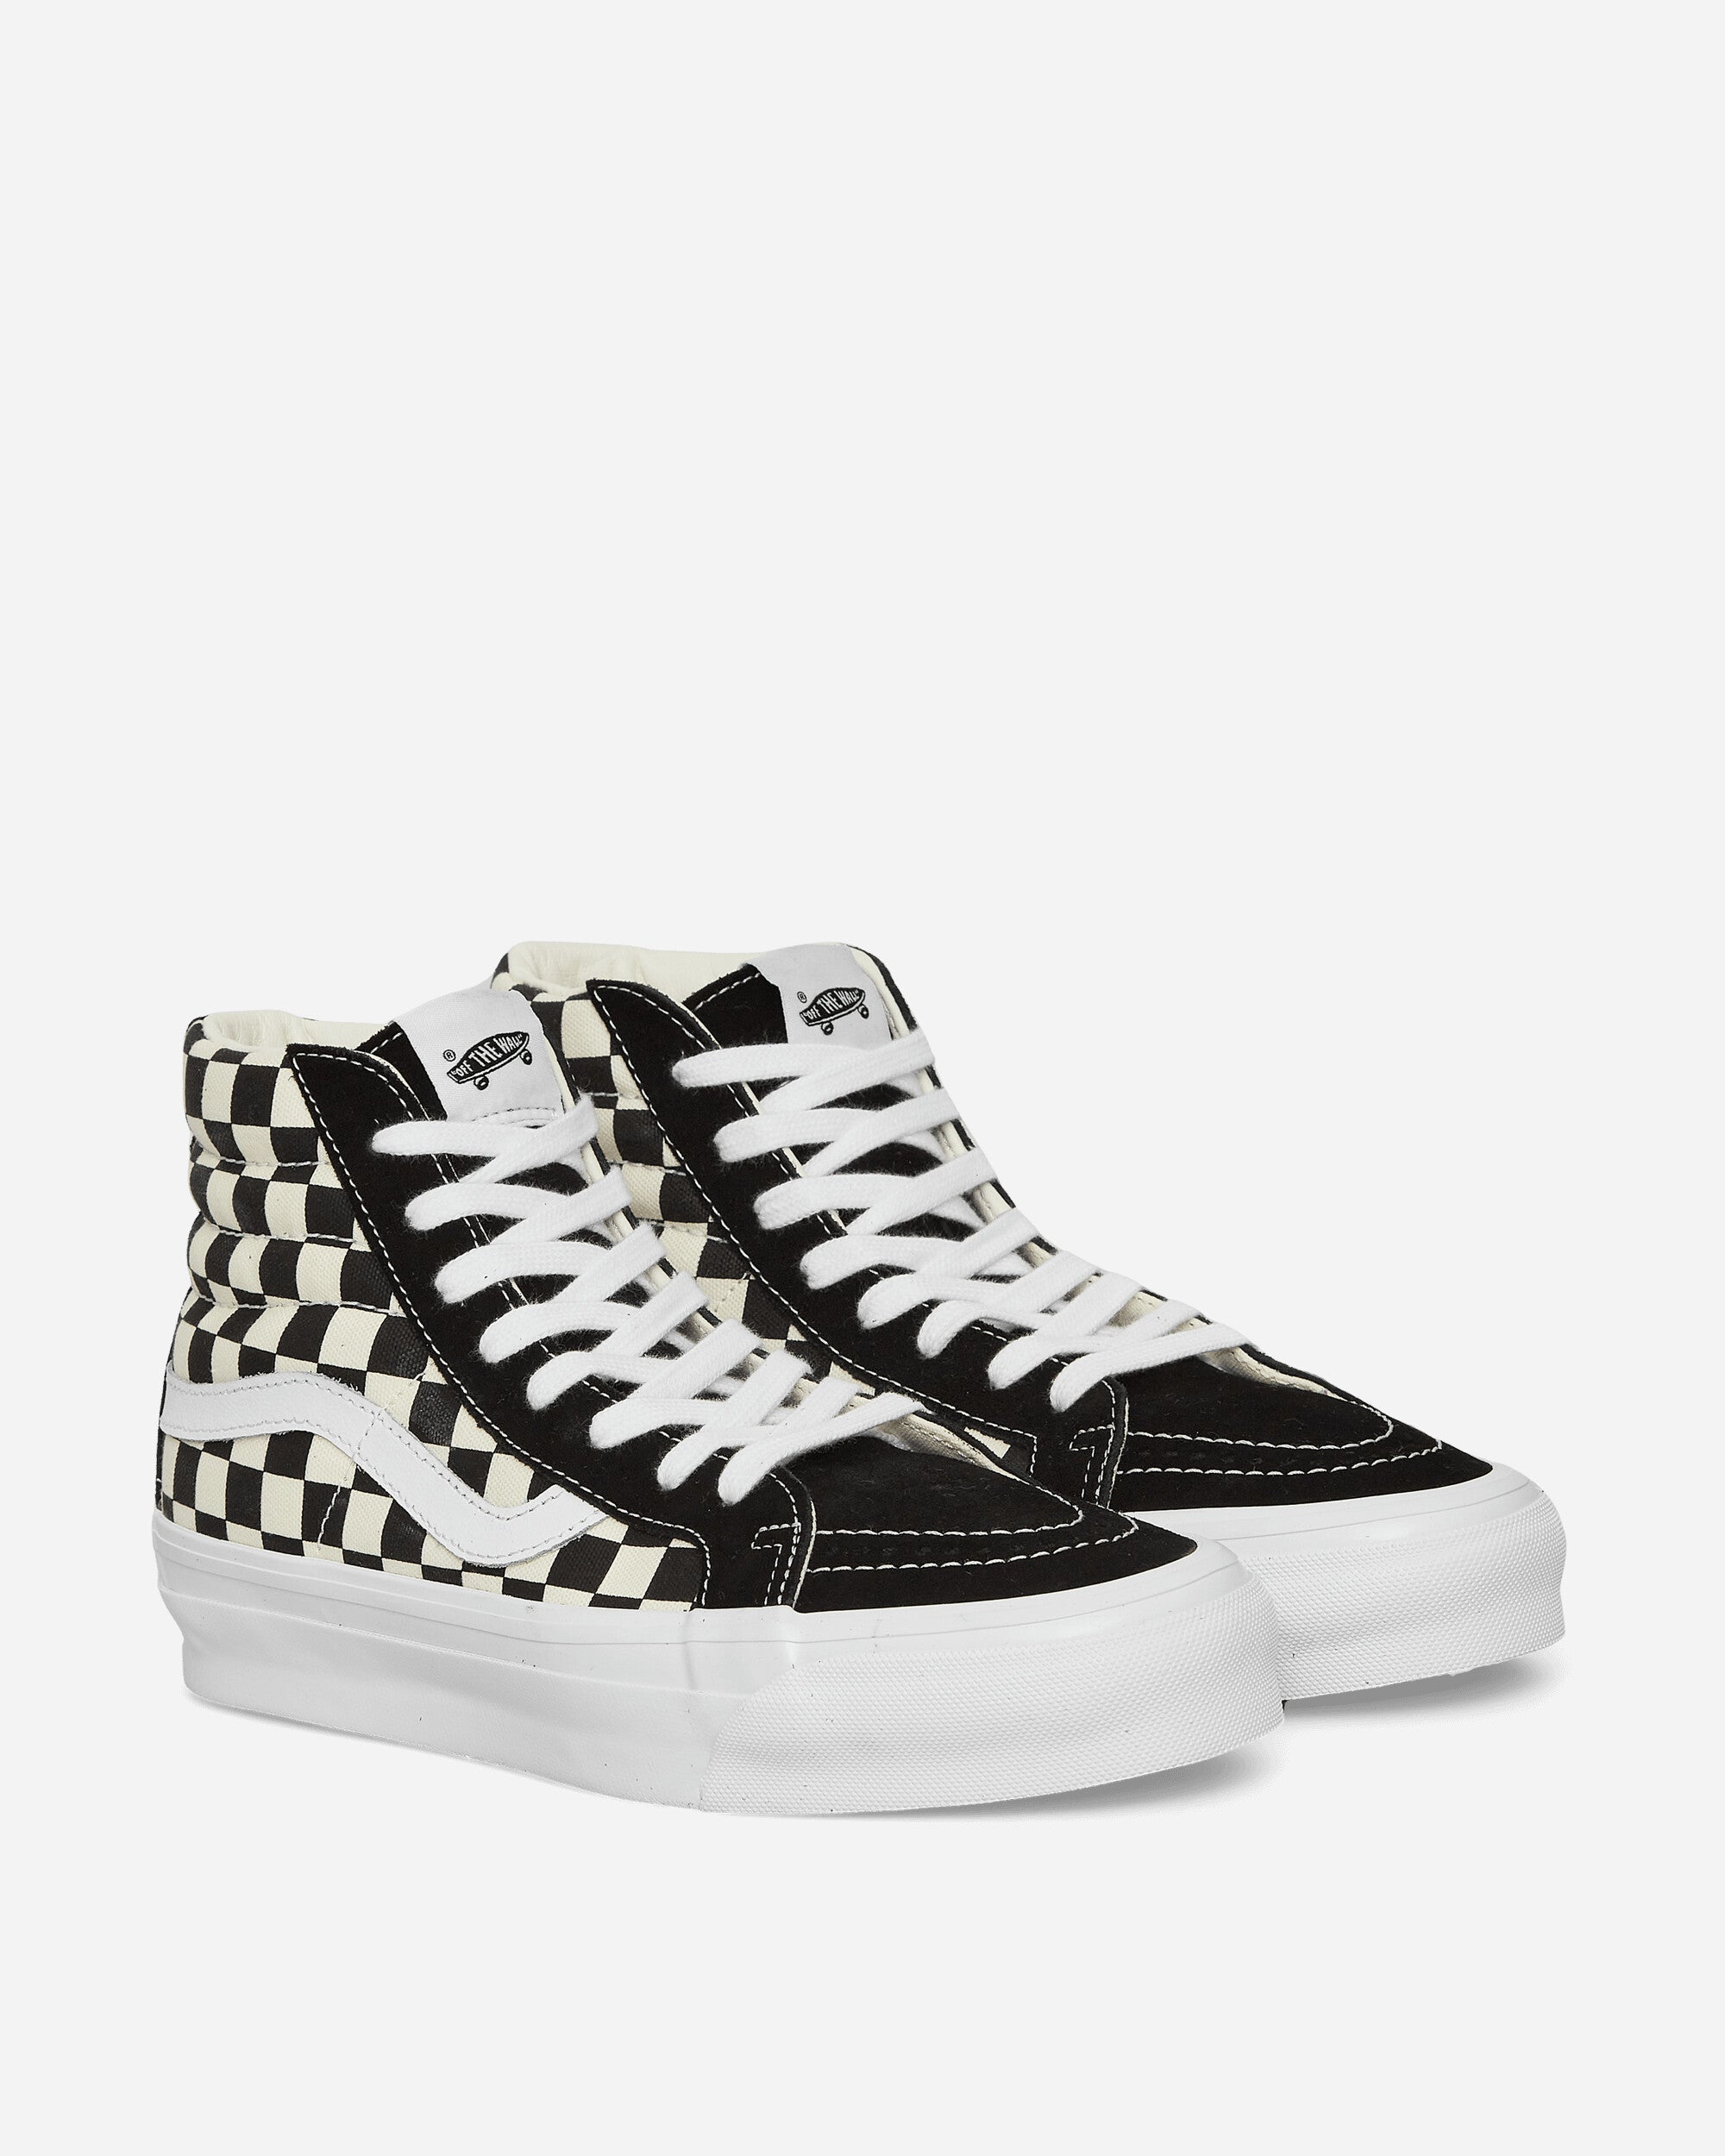 Vans Slip-On Reissue 98 Checkerboard Black/Off White Sneakers High VN000CR02BO1